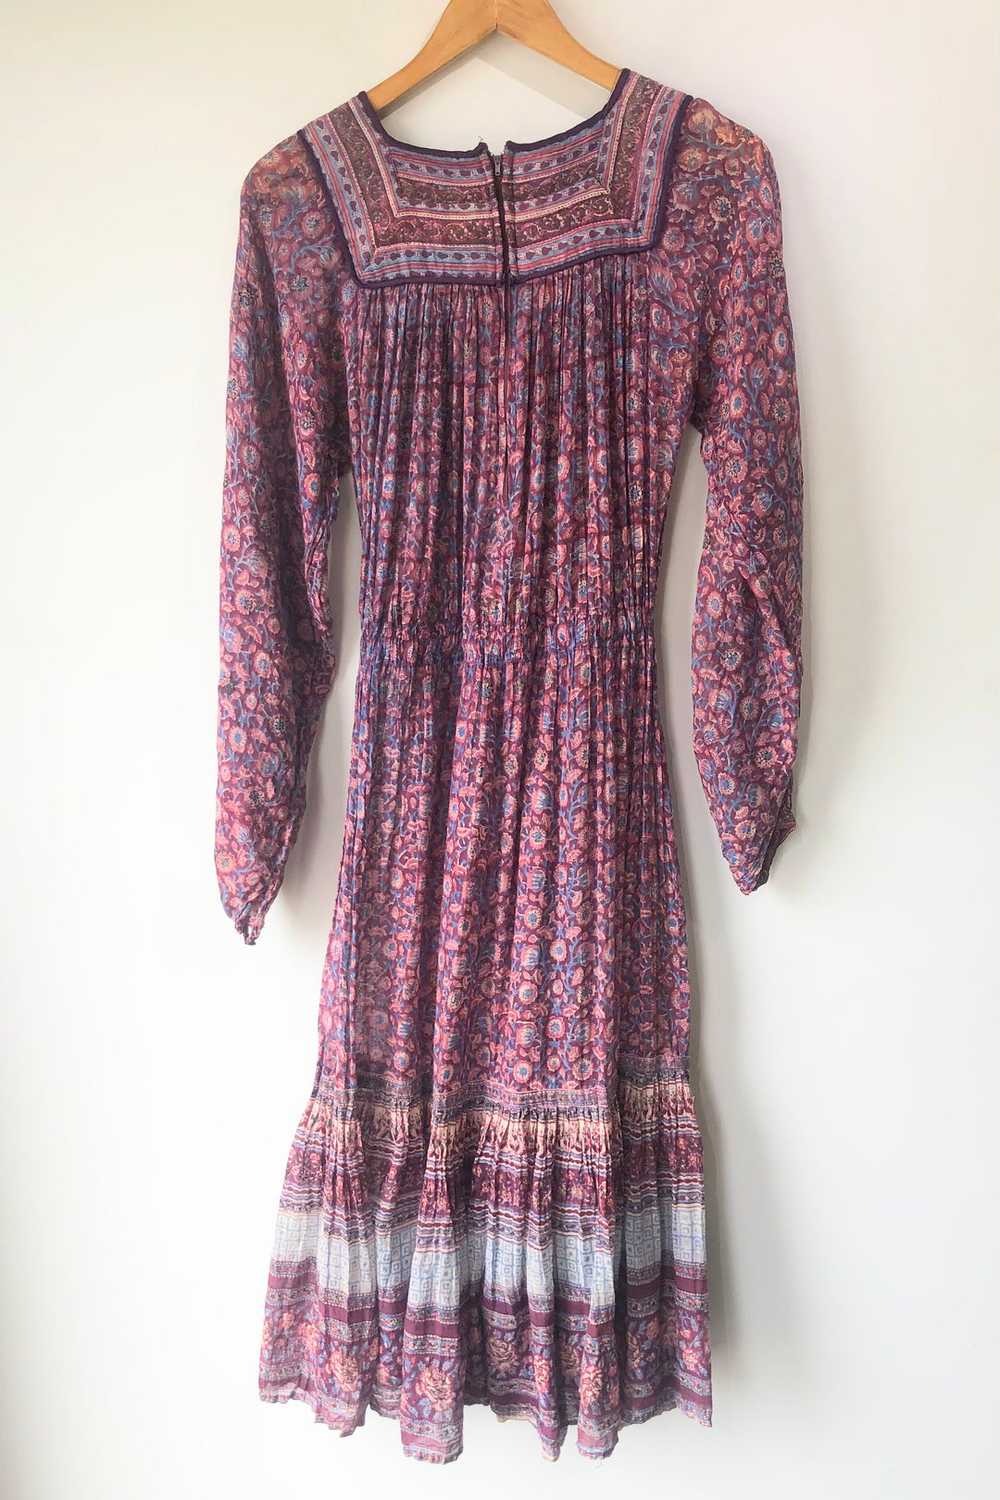 Vintage Phool Dress - image 2